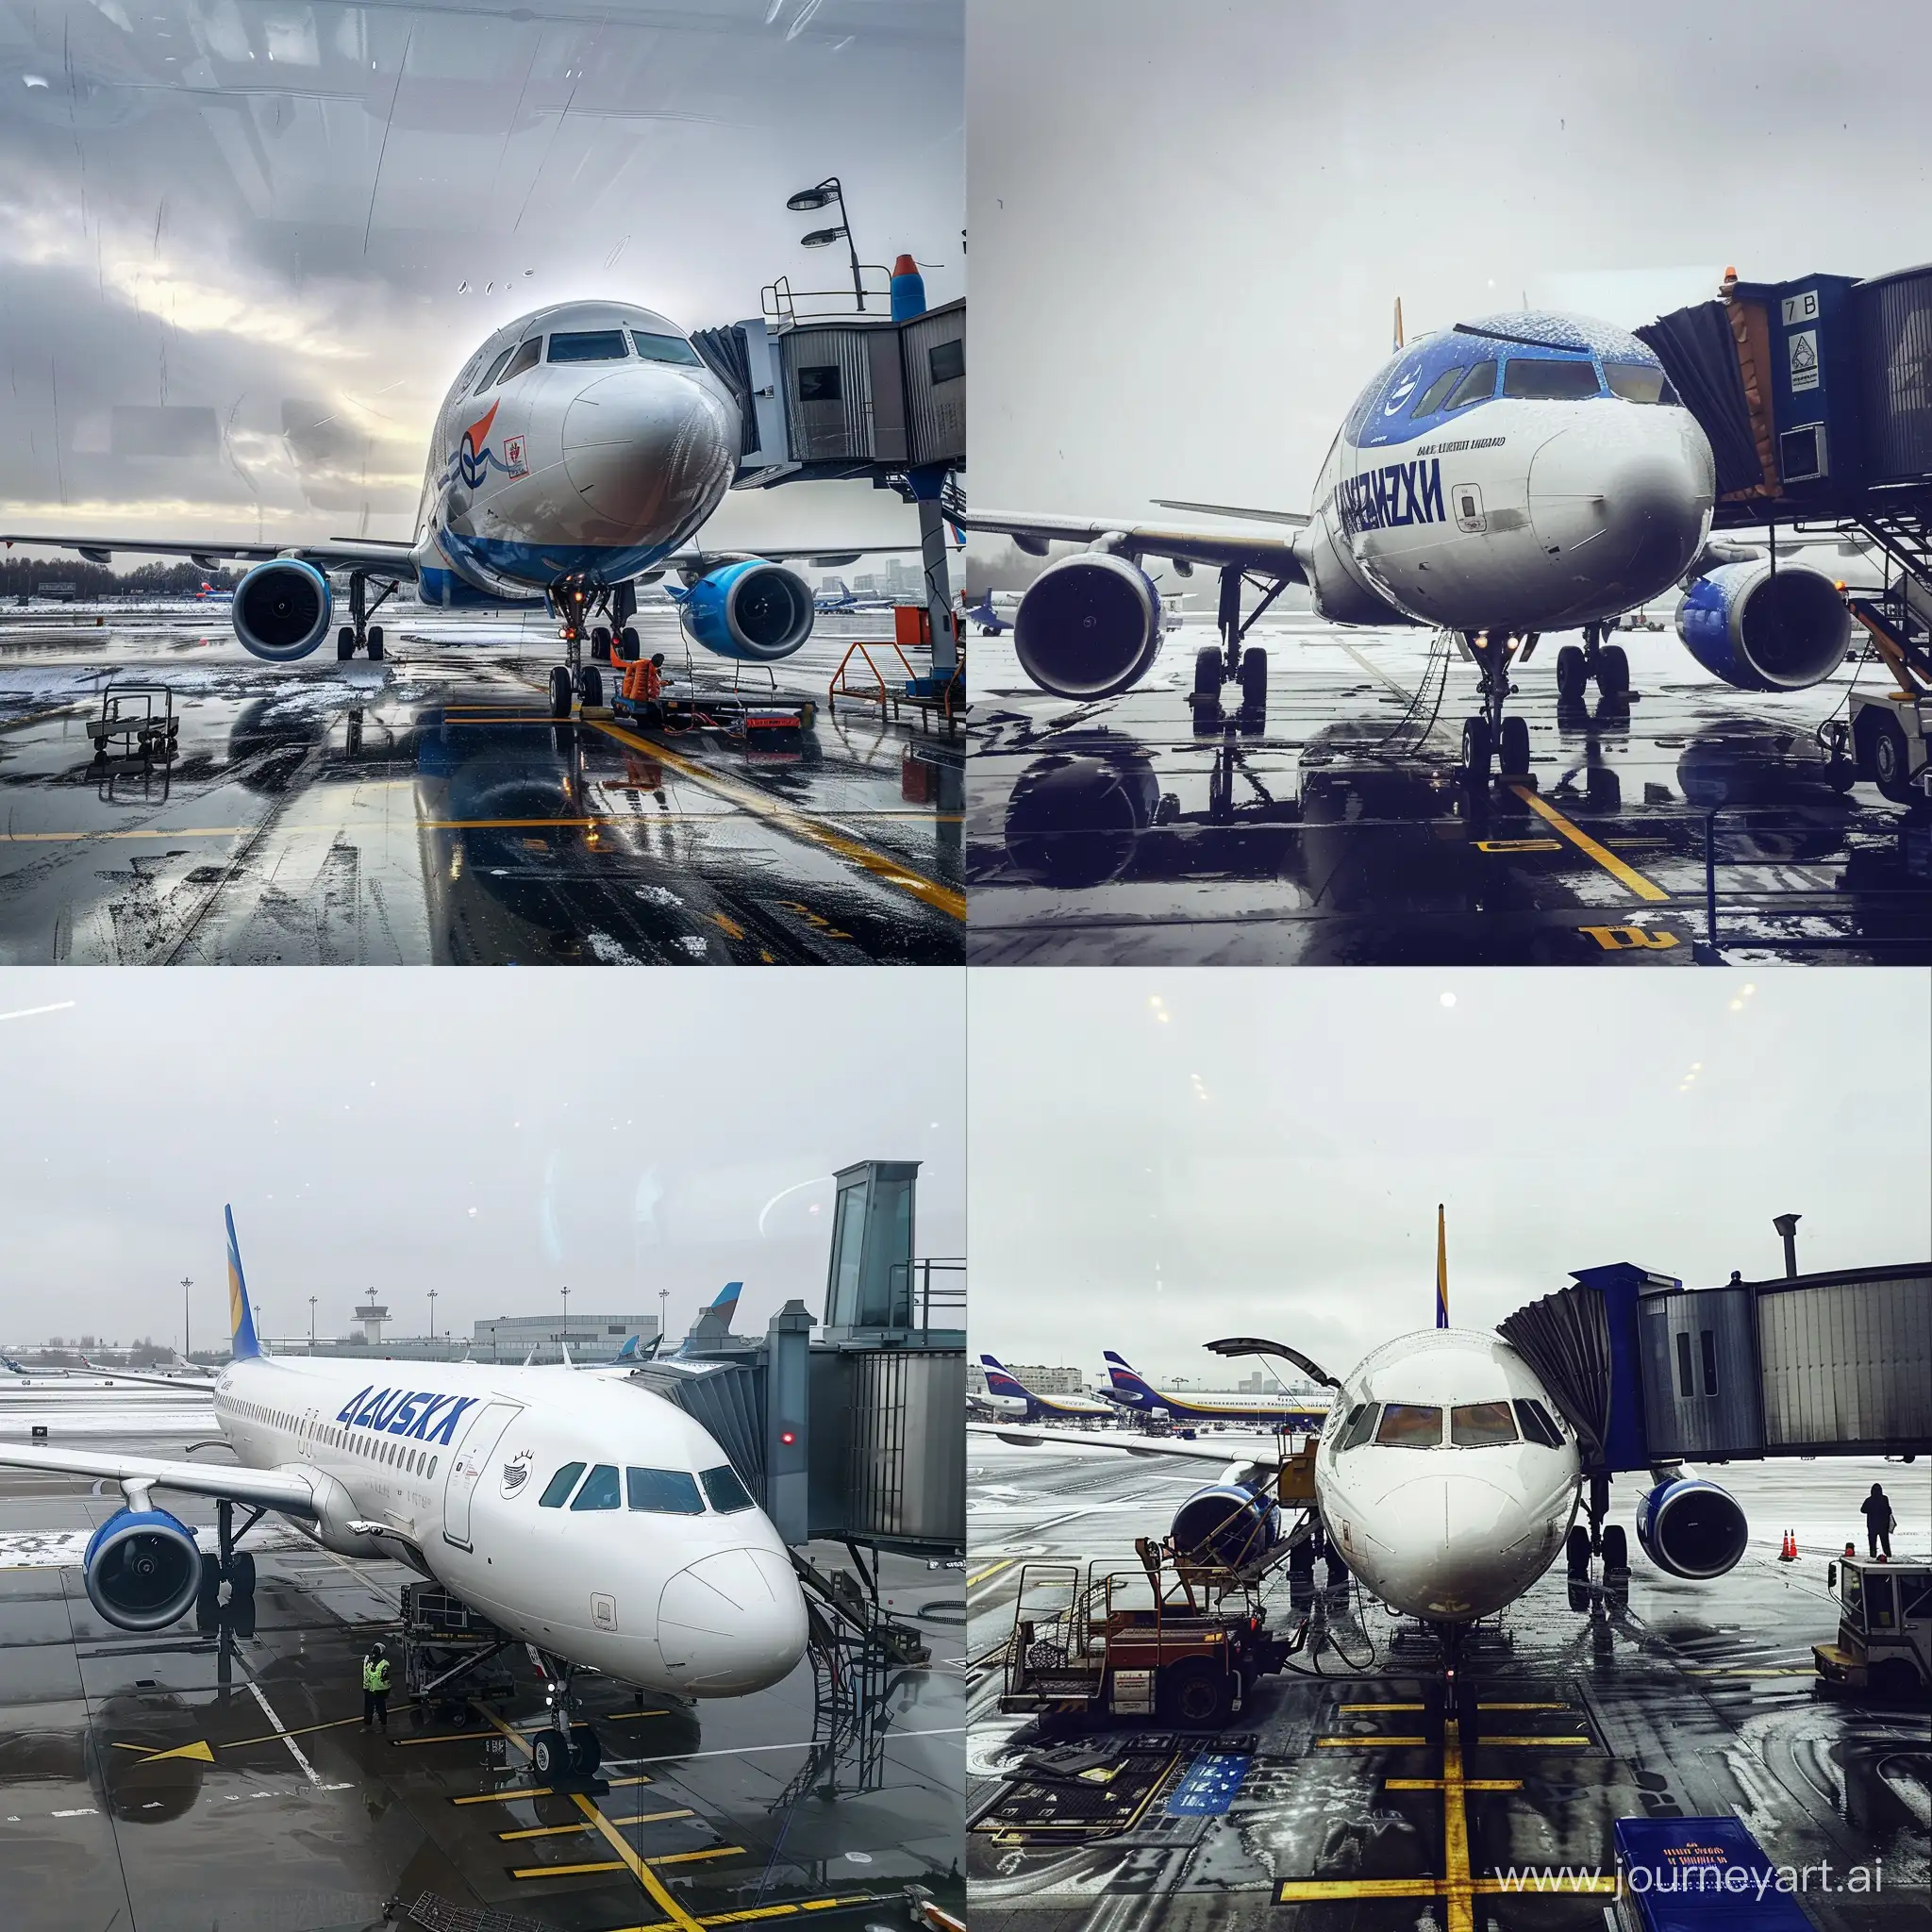 Фотография, как самолет казахской авиакомпании в аэропорту Внуково готовят к посадке пассажиров, погода на улице соответствует концу марта